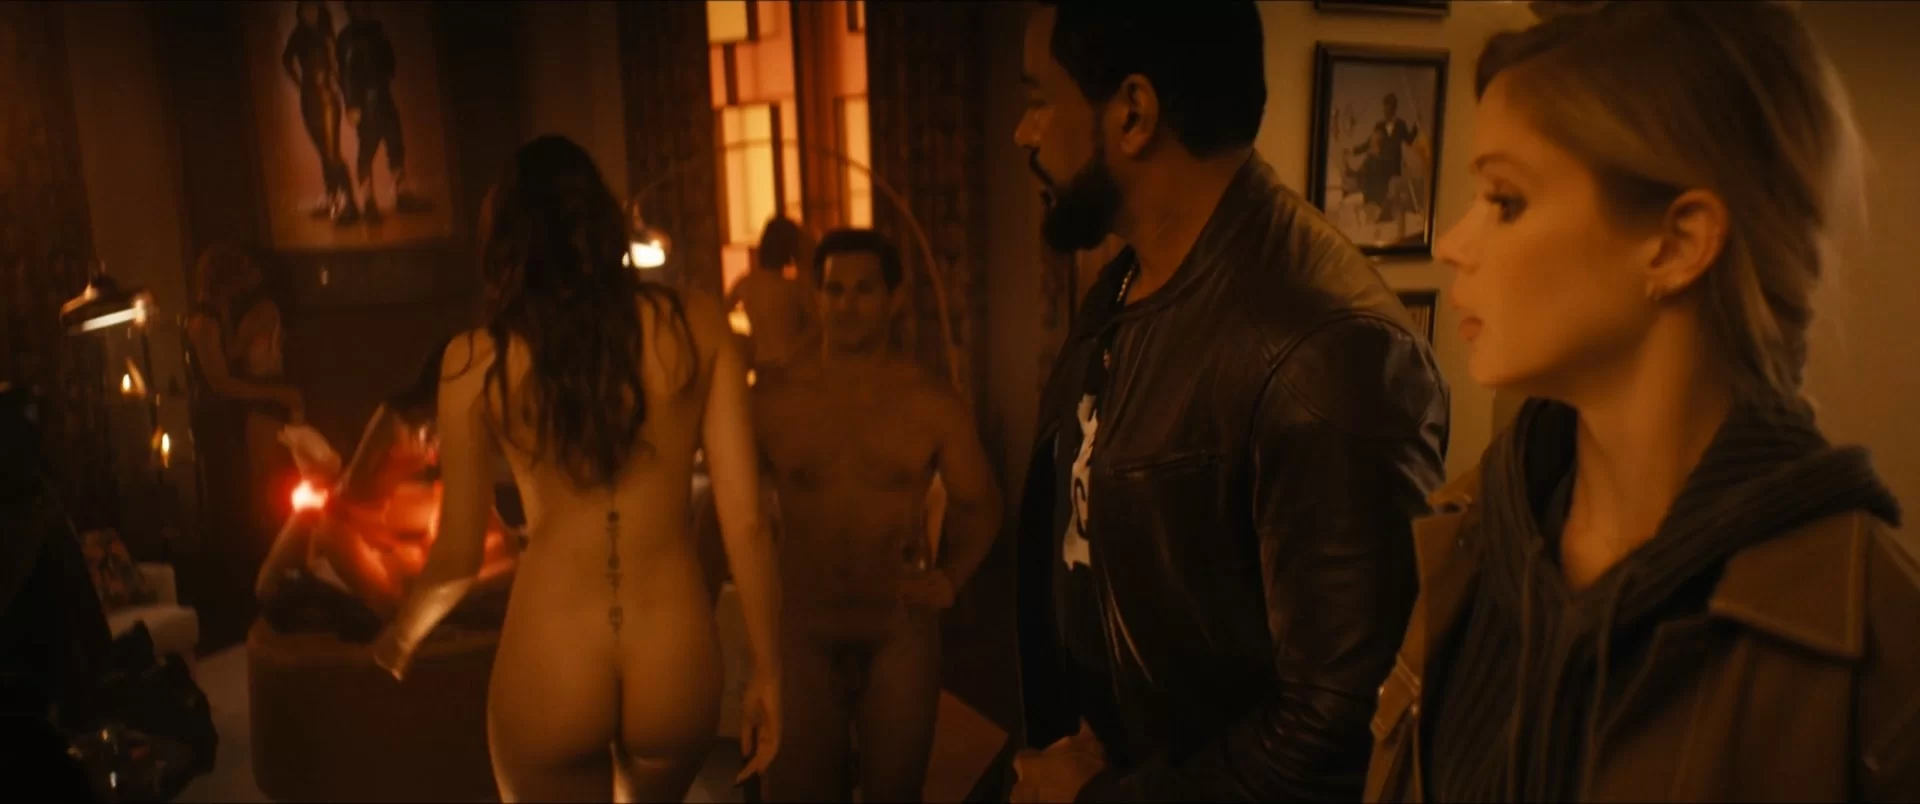 The boys nude sex scene